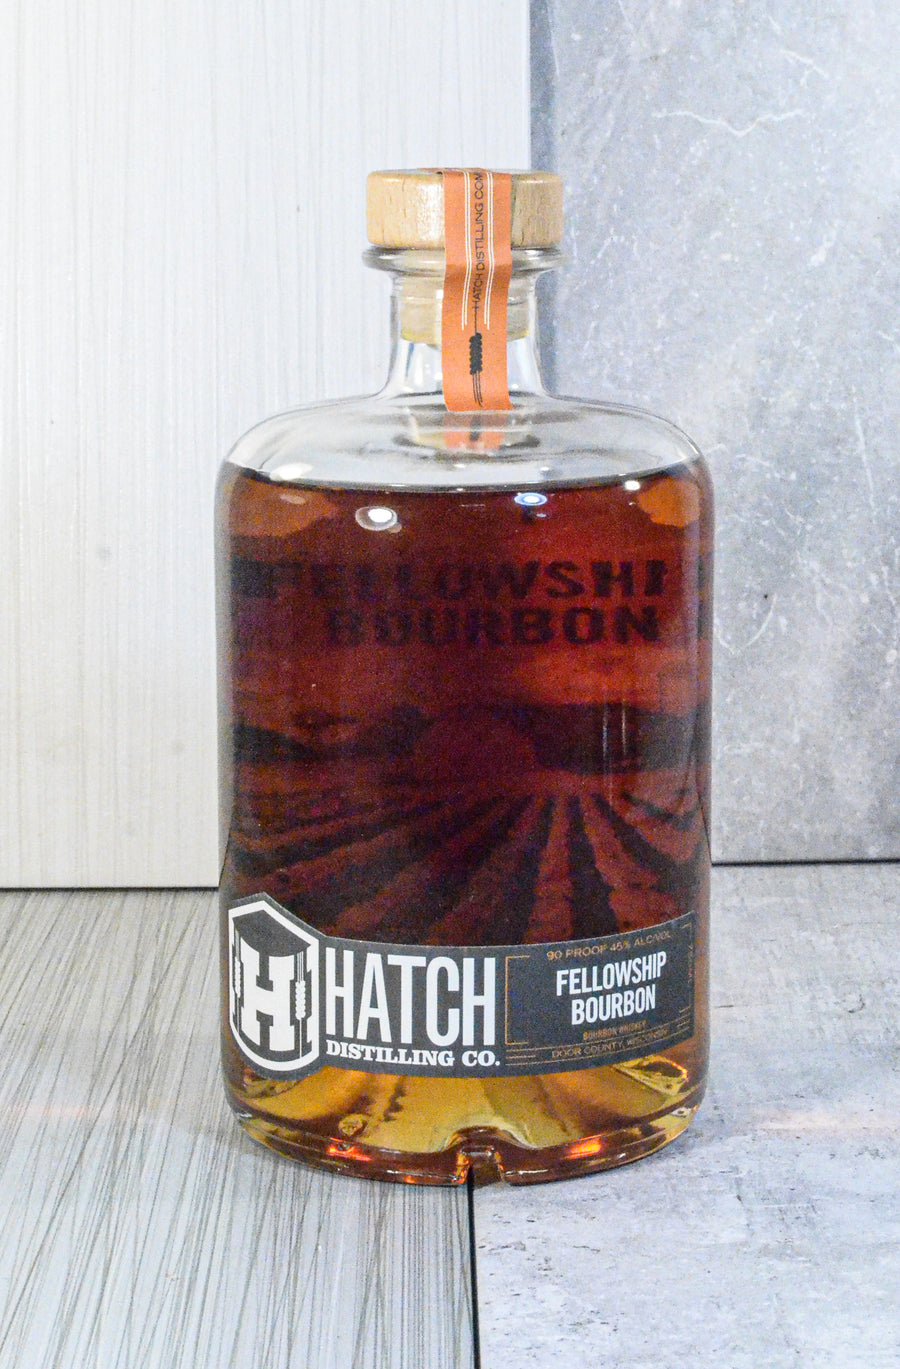 Hatch Distilling, Fellowship Bourbon